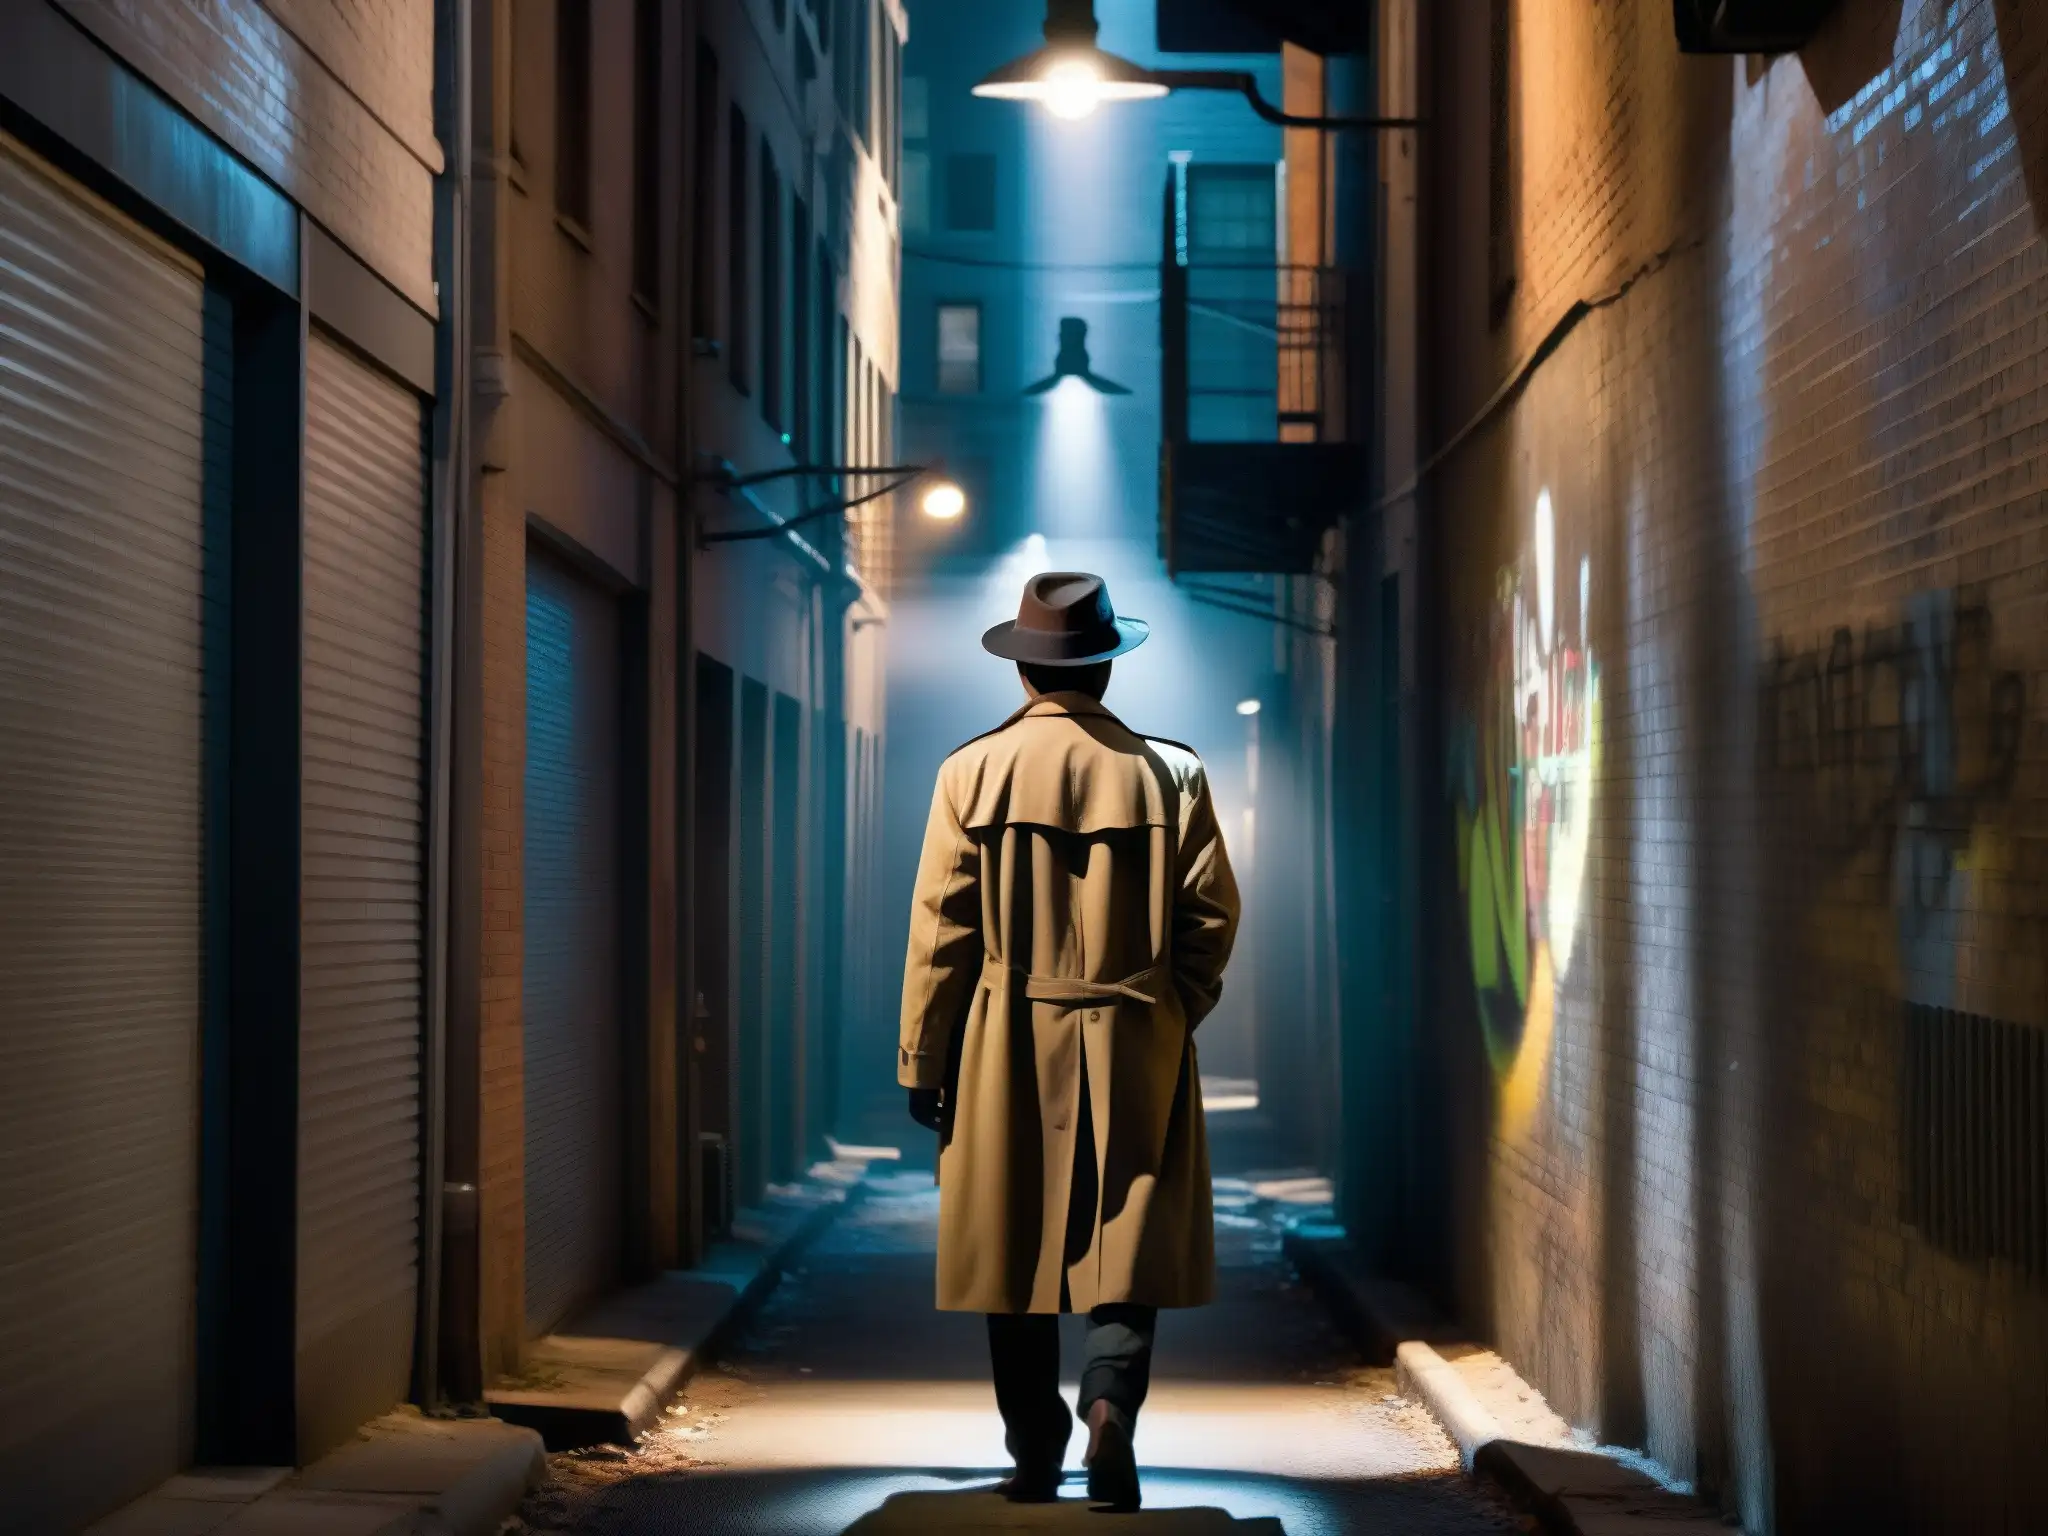 Atractivo de lo inexplicable en leyendas urbanas: Un callejón sombrío con grafitis, una figura misteriosa y sombras alargadas